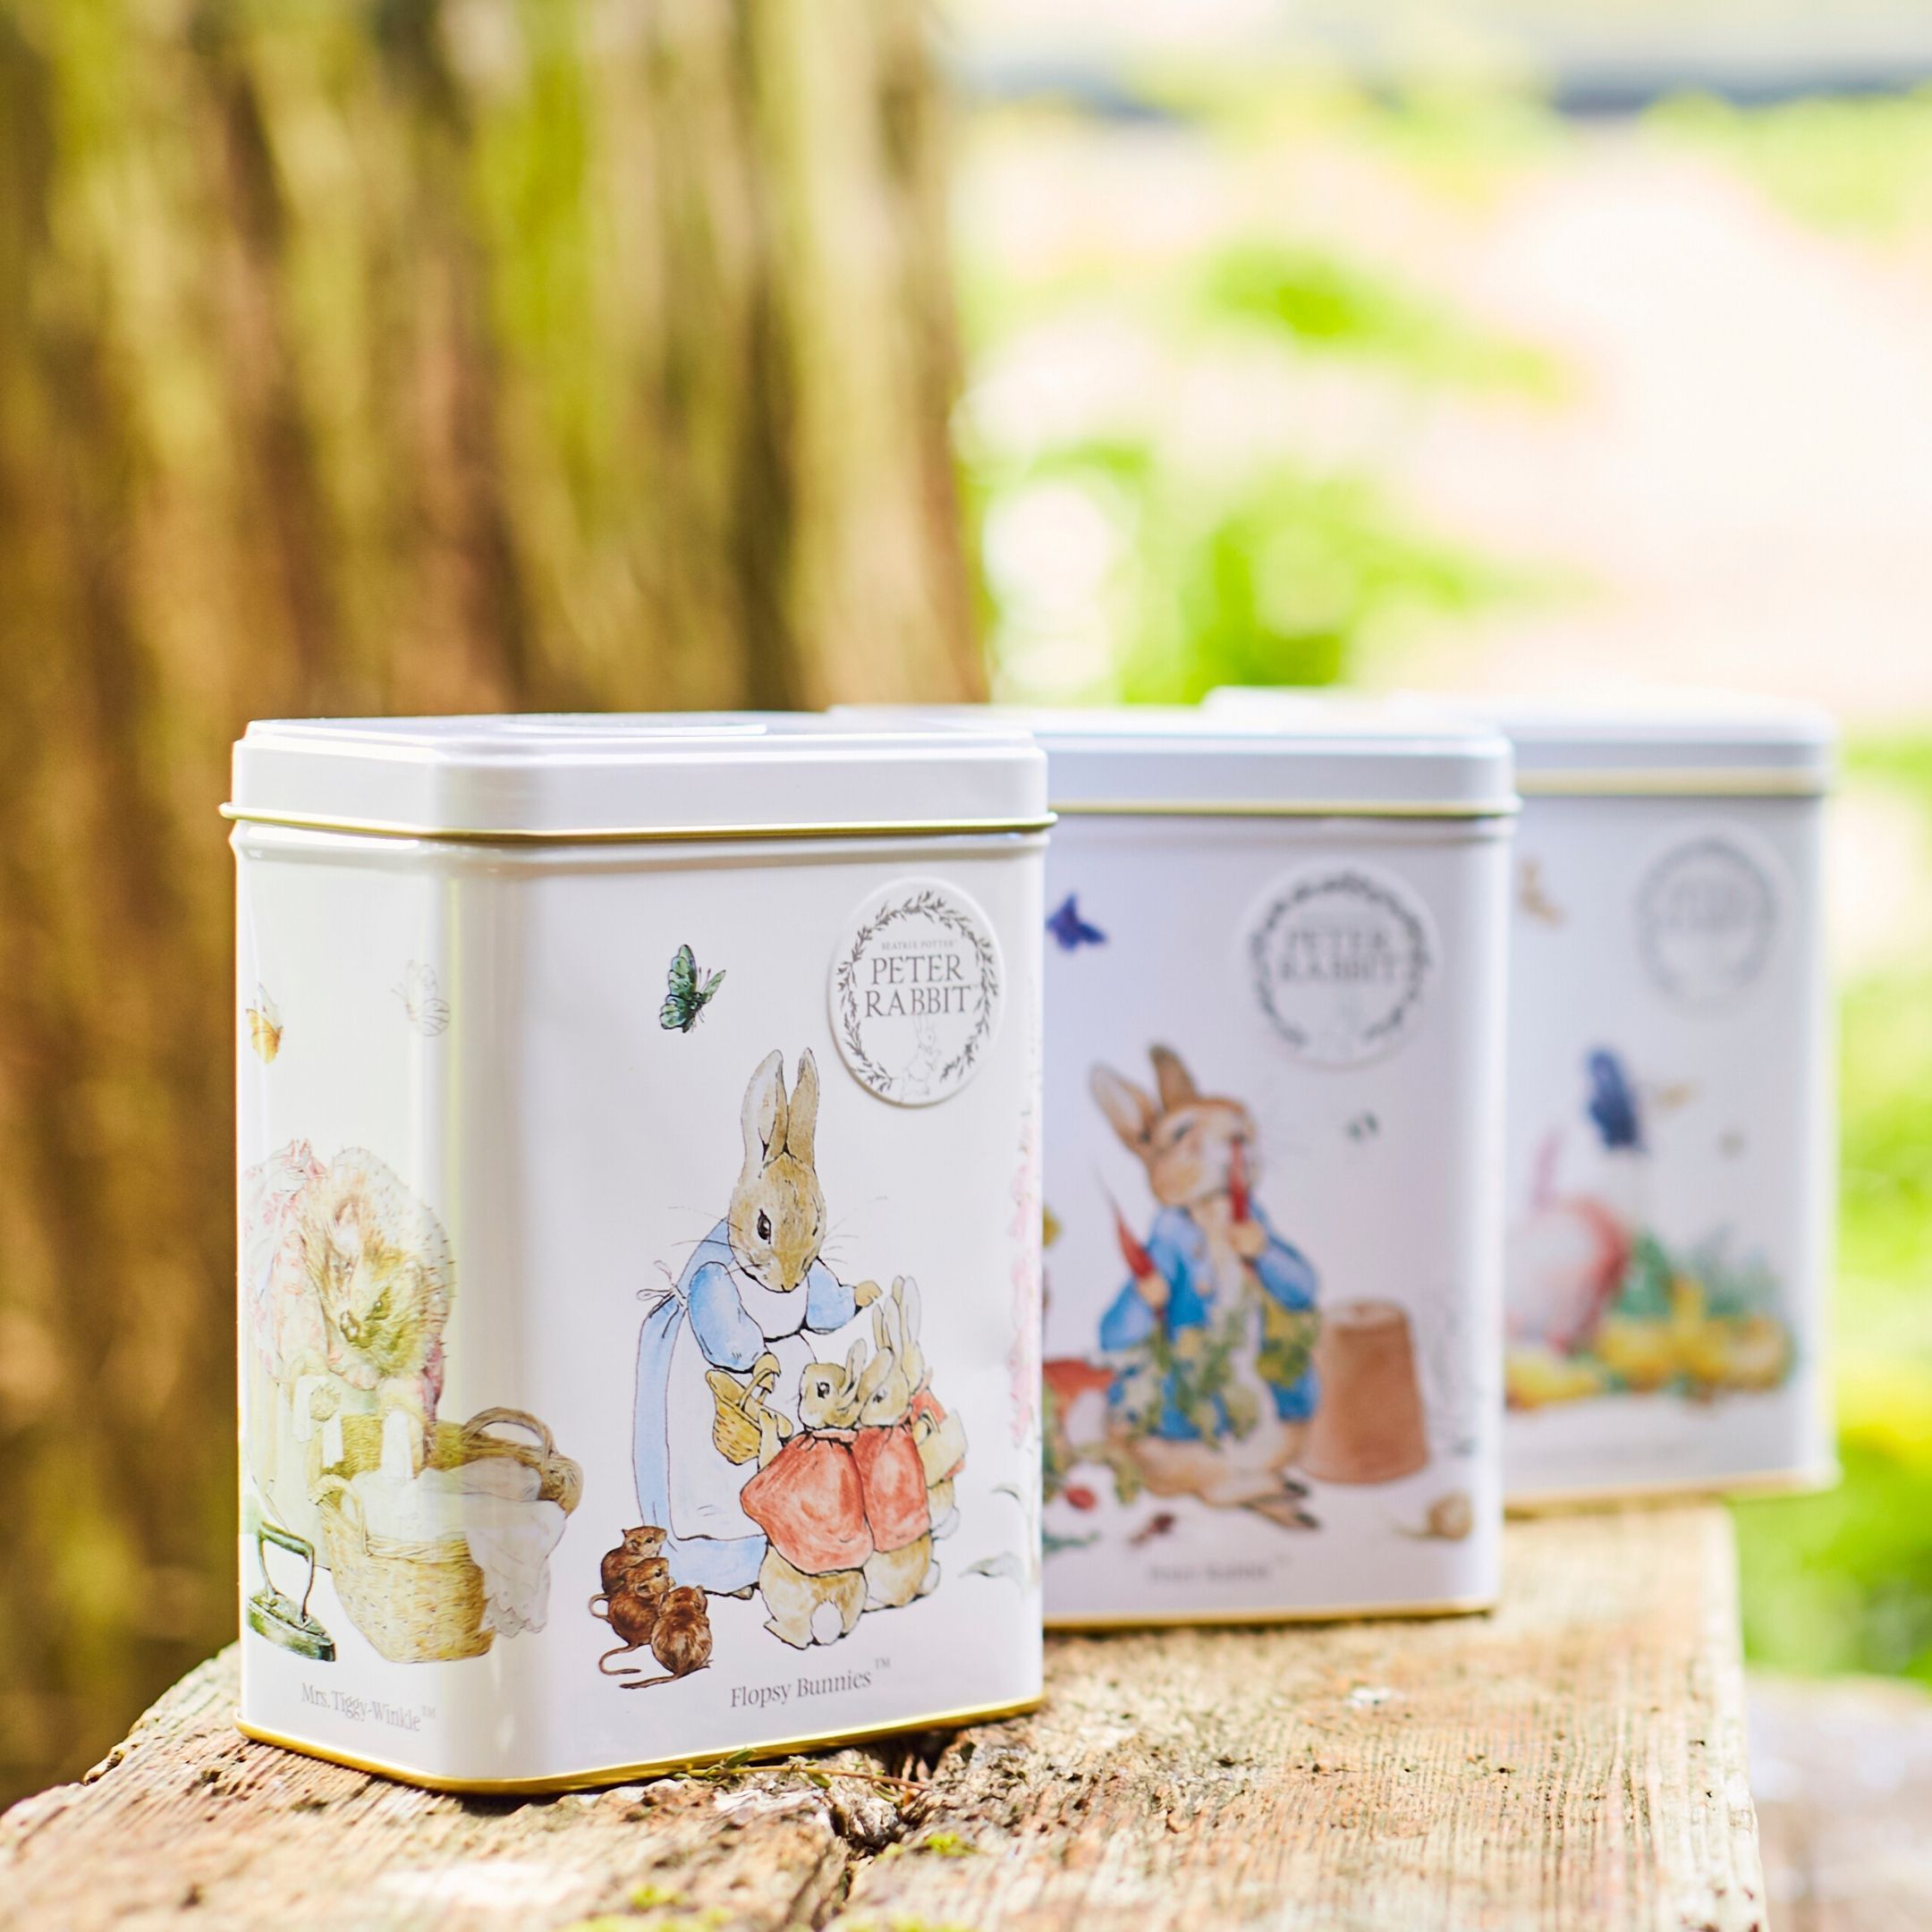 Beatrix Potter Triple Tin Gift with 120 teabags Black Tea New English Teas 